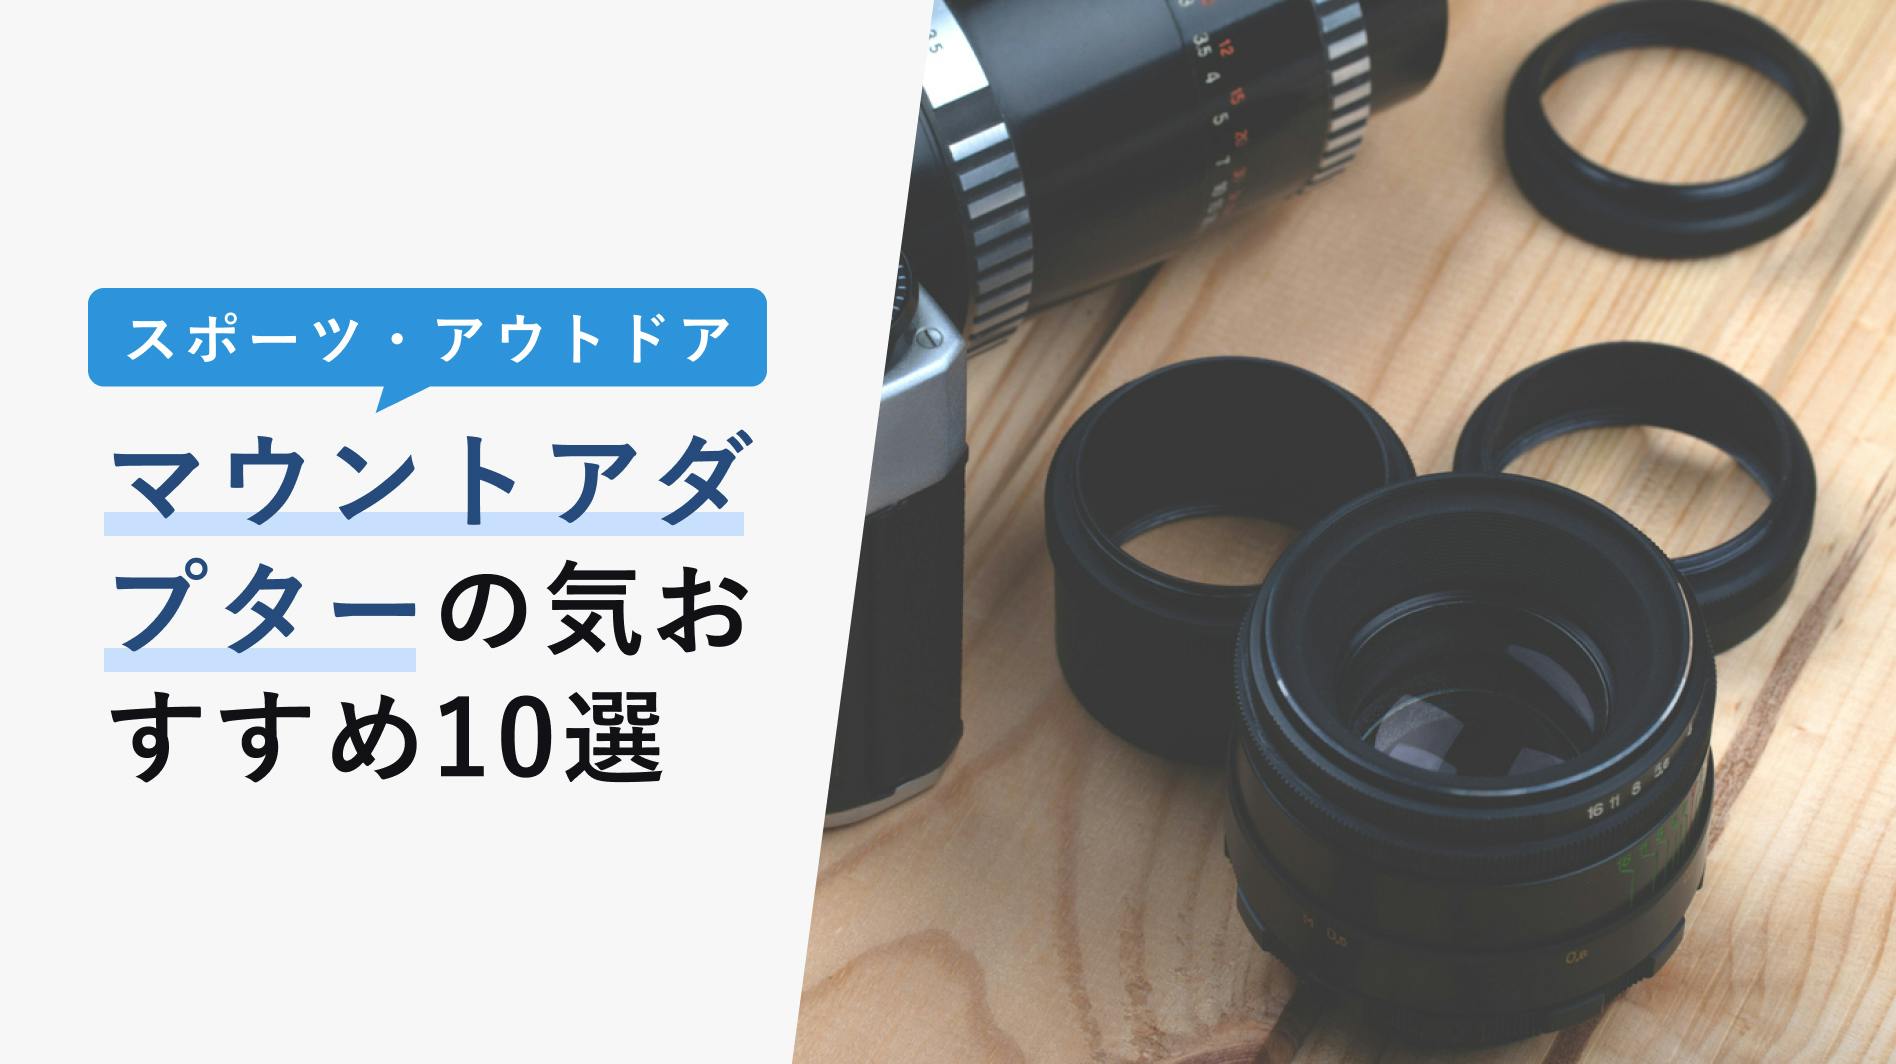 SMC Takumar 28mm F3.5 Fuji Xマウントアダプター付 - レンズ(単焦点)